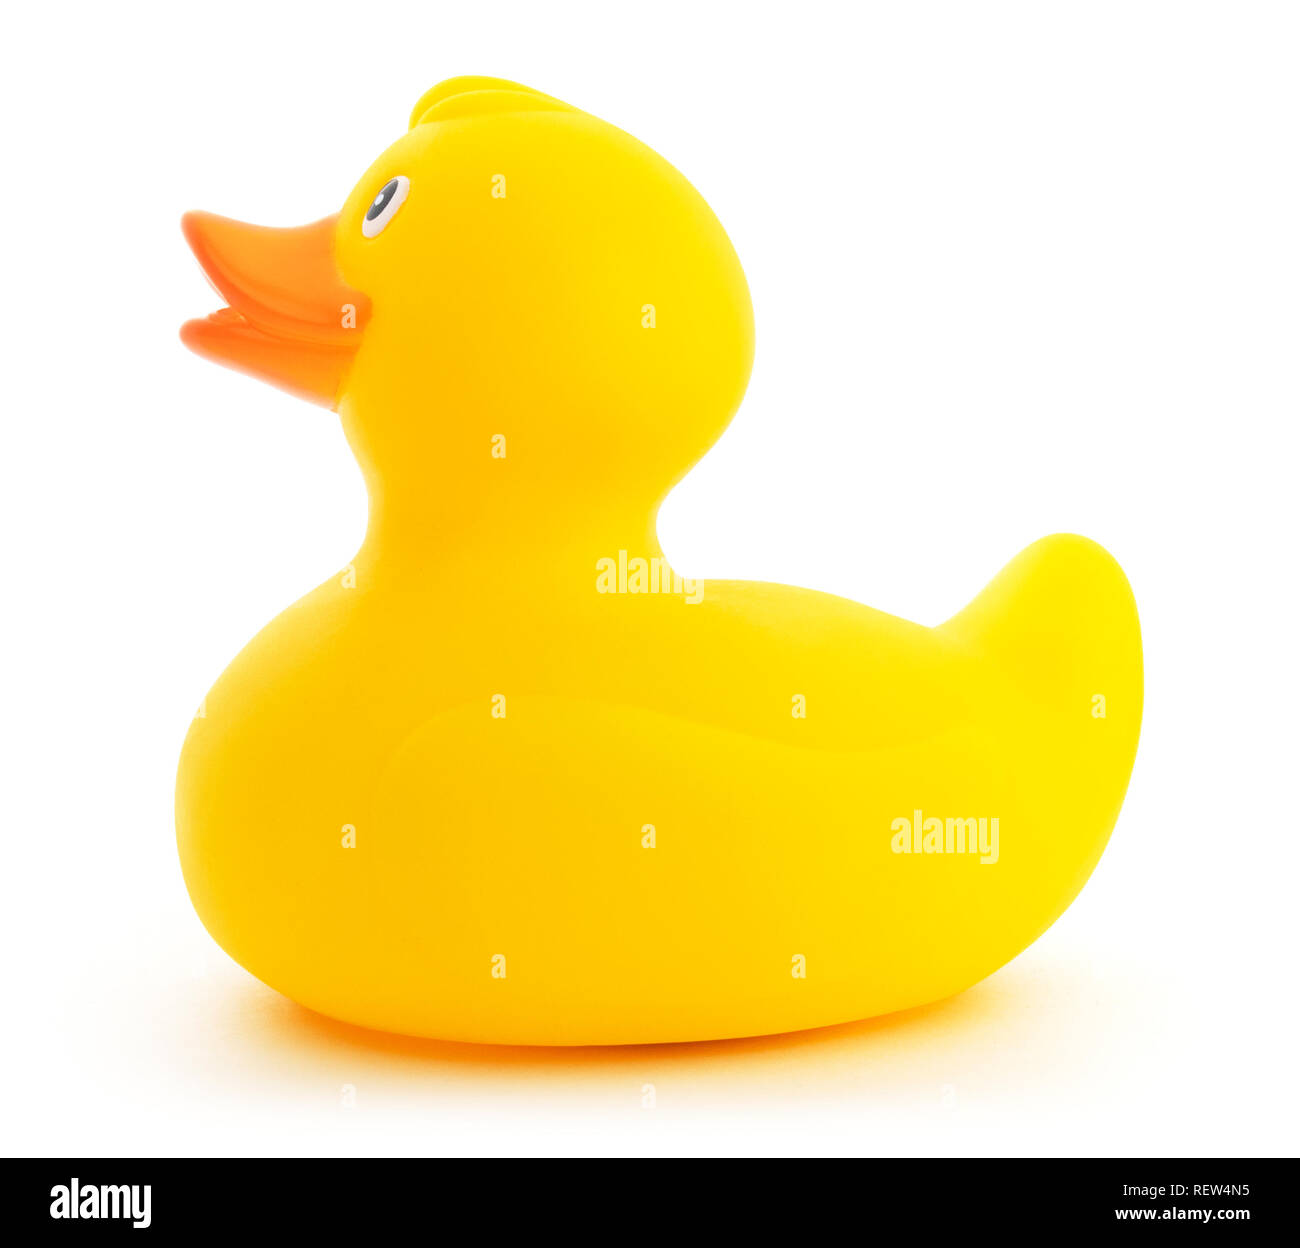 Isolato giallo gomma plastica ducky giocattolo. Vista laterale di un simpatico giallo rubber duck su uno sfondo bianco. Foto Stock